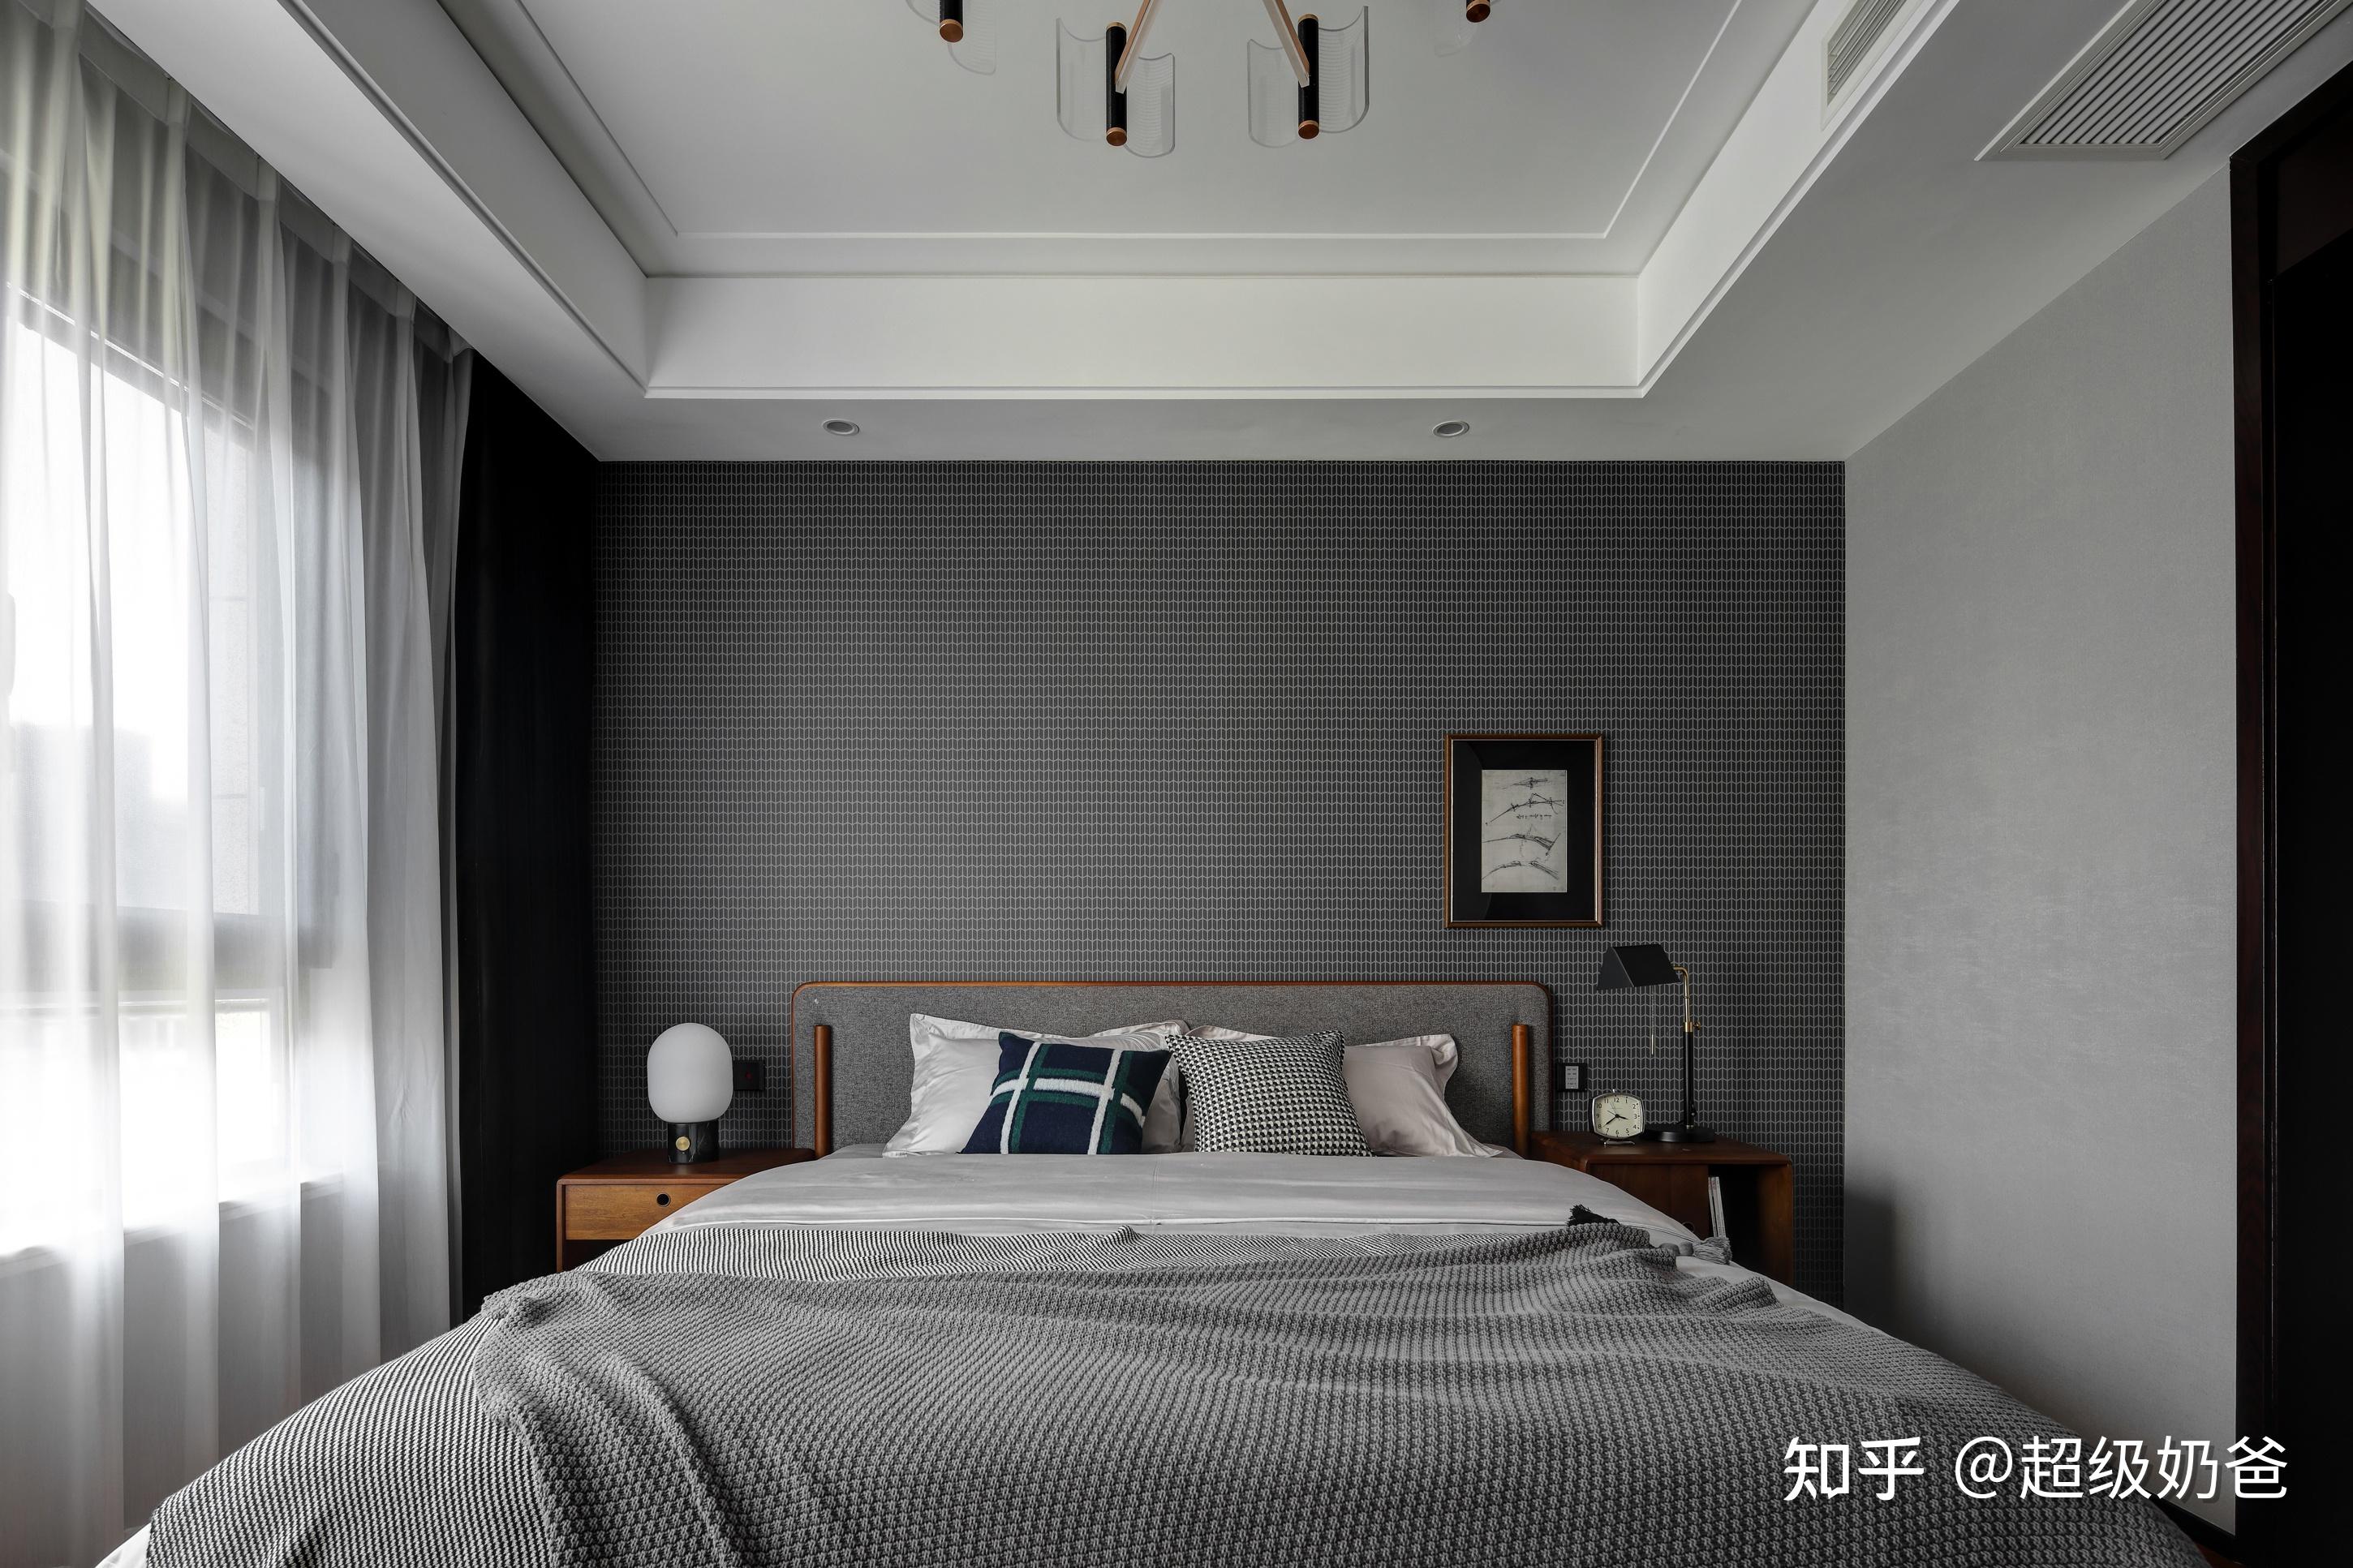 床头背景墙铺贴了灰色的格纹墙布,与床头暖灰色相呼应,带来满满的高级